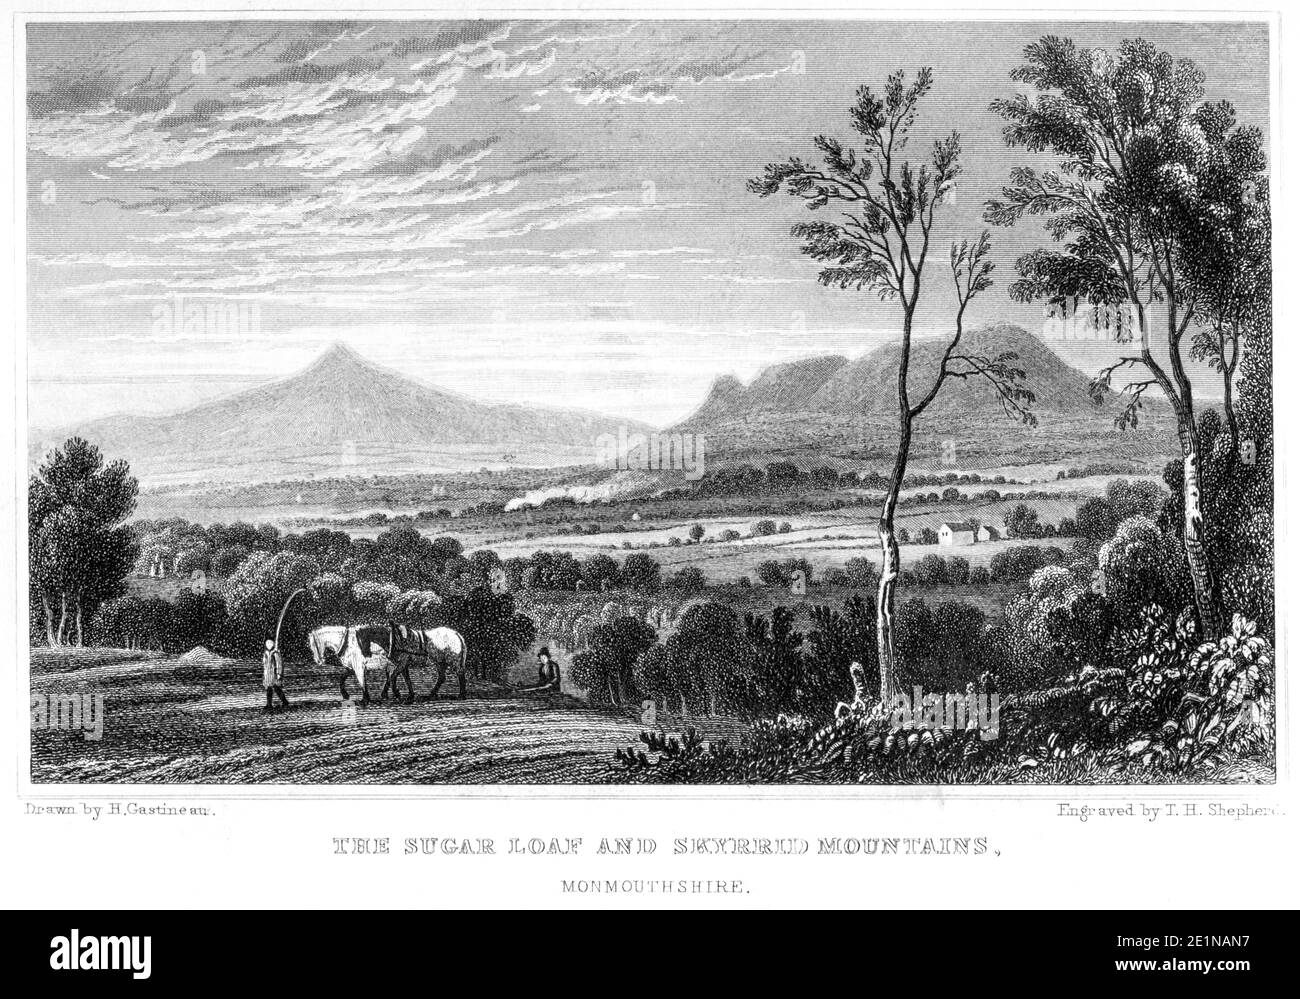 Une gravure du pain de sucre et des montagnes du Skyrrid Monbucshire numérisée à haute résolution à partir d'un livre publié en 1854. Je pensais libre de droits d'auteur. Banque D'Images